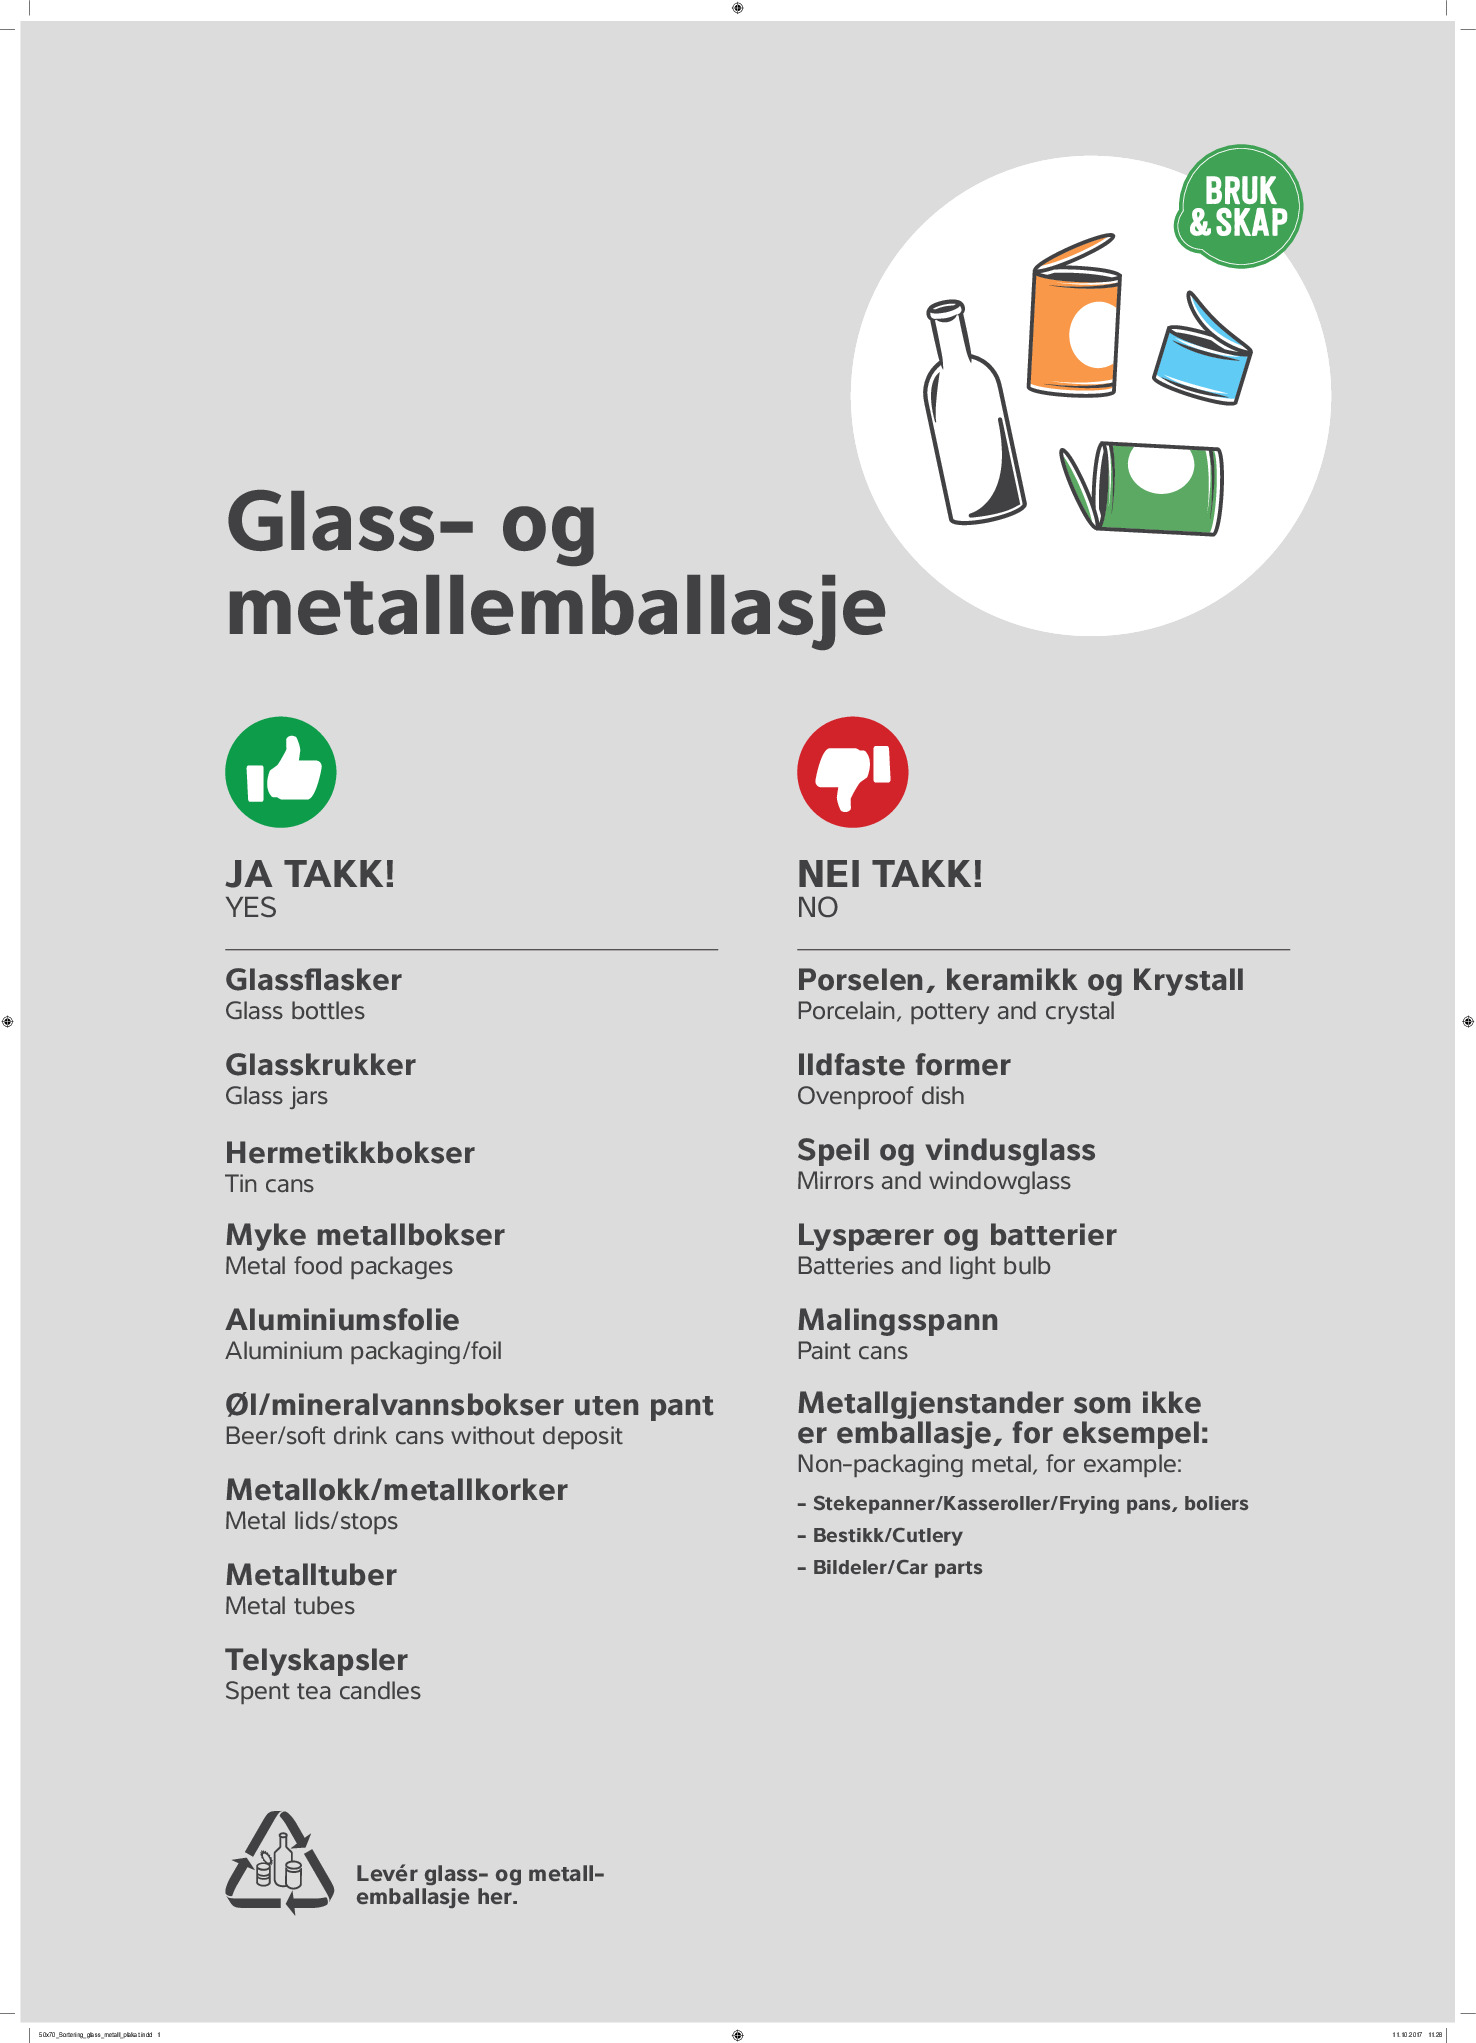 plakat som viser hva som skal leveres i glass- og metallemballasjecontainerne